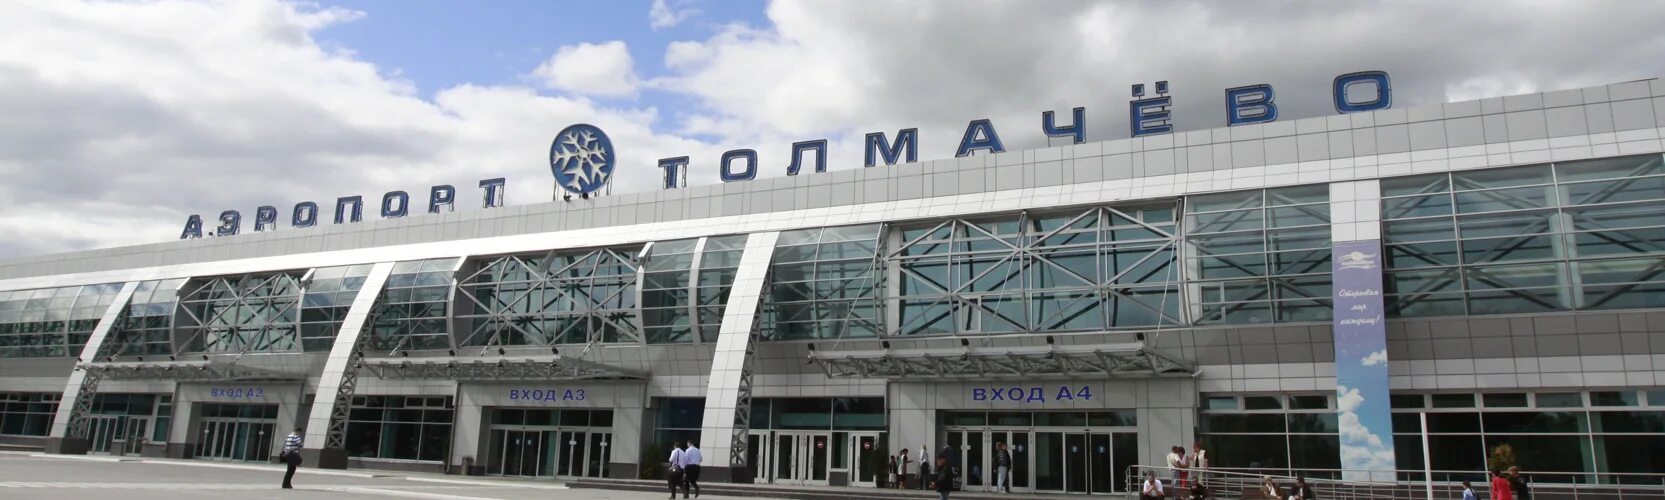 Сколько ехать до аэропорта новосибирска. Аэропорт Толмачево Новосибирск. Аэропорт Толмачево 2000 год. Автовокзал Толмачево Новосибирск. Толмачево ЖД вокзал Новосибирск.